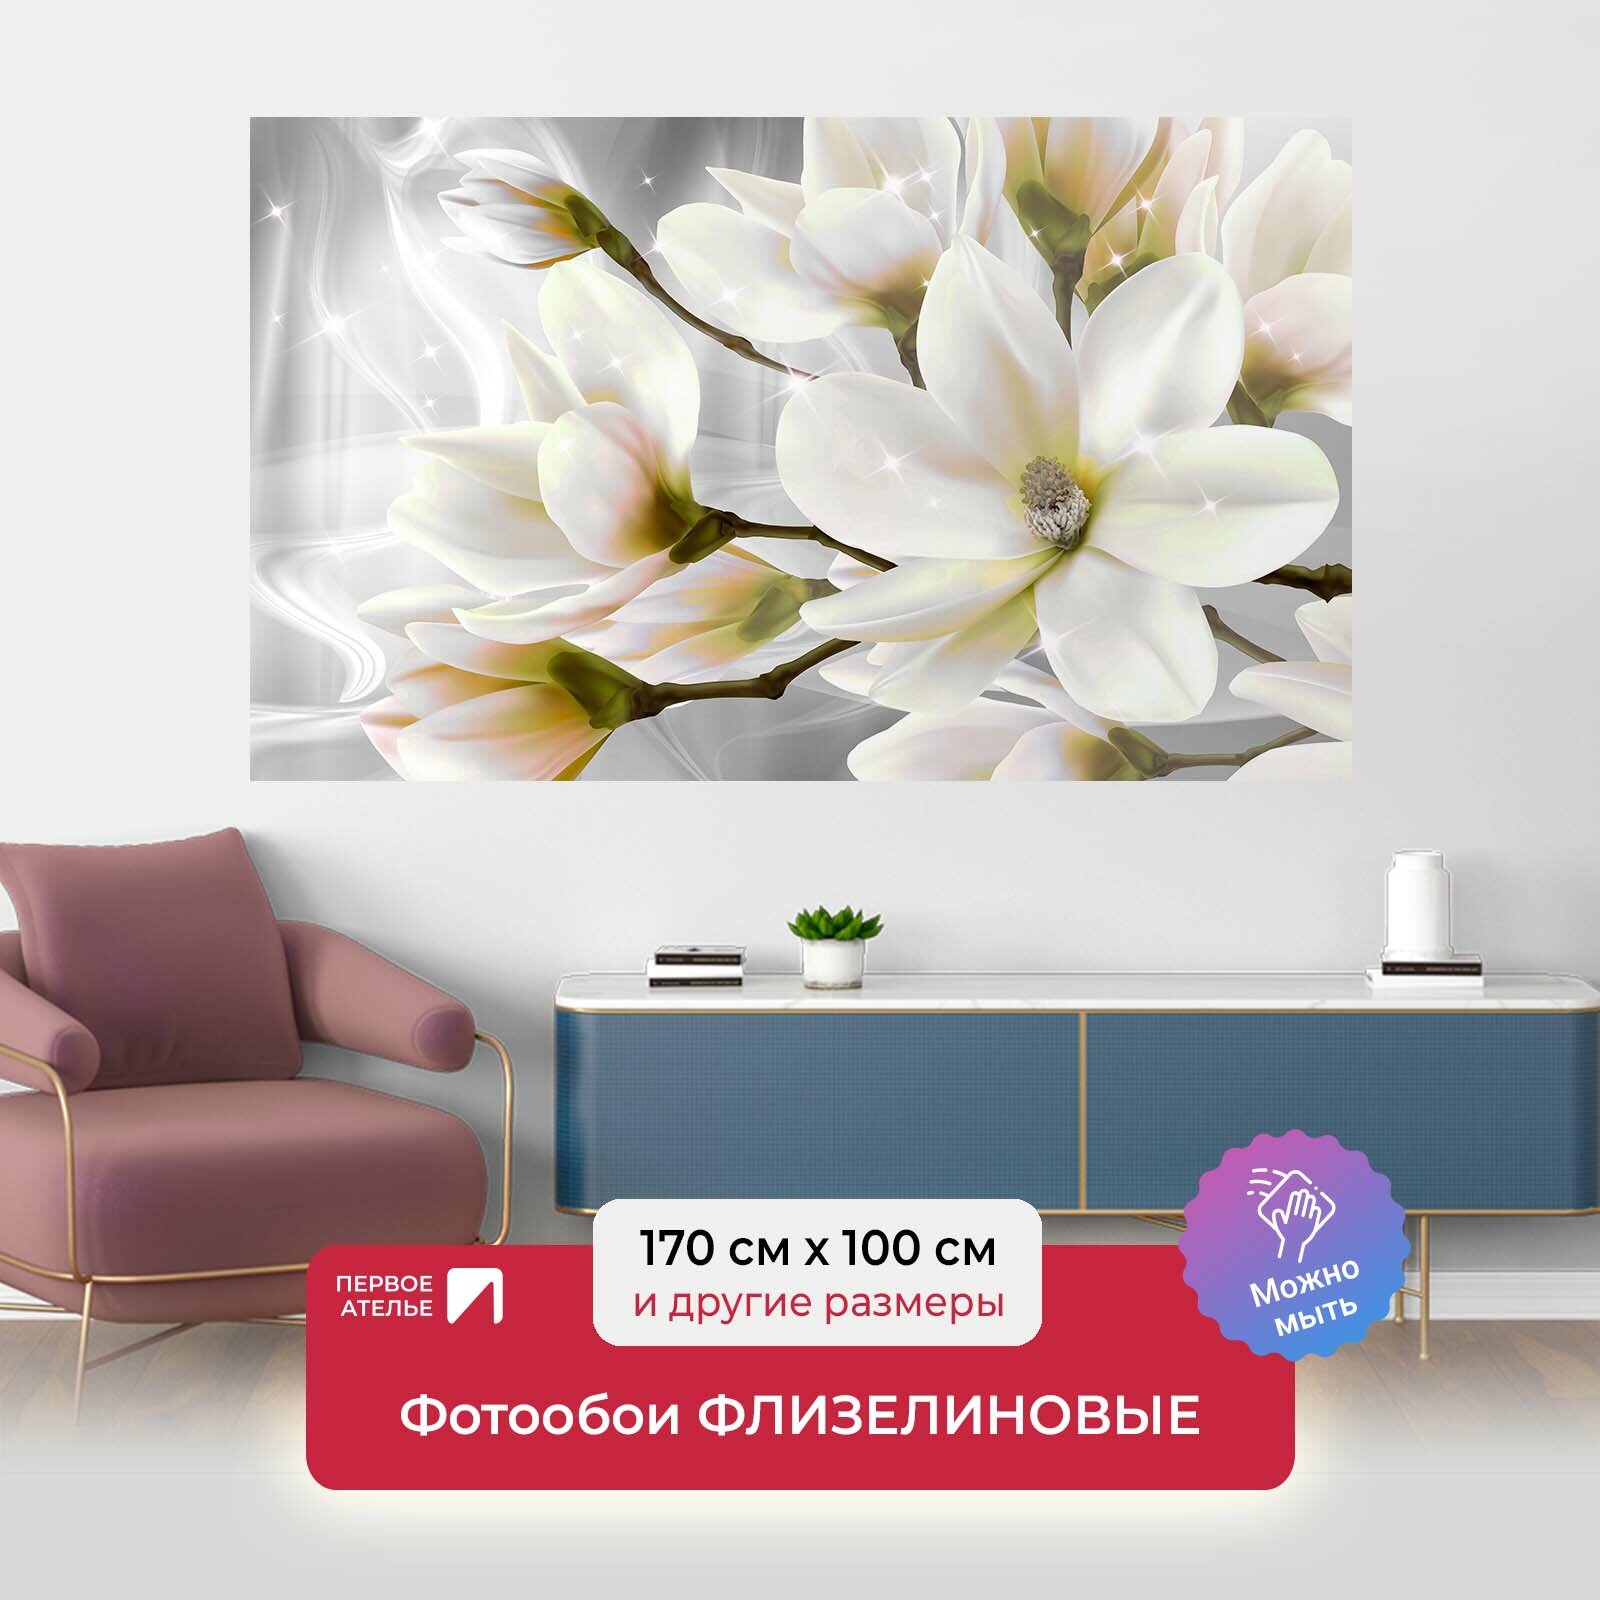 Фотообои на стену первое ателье "Великолепные цветы сакуры" 170х100 см (ШхВ), флизелиновые Premium